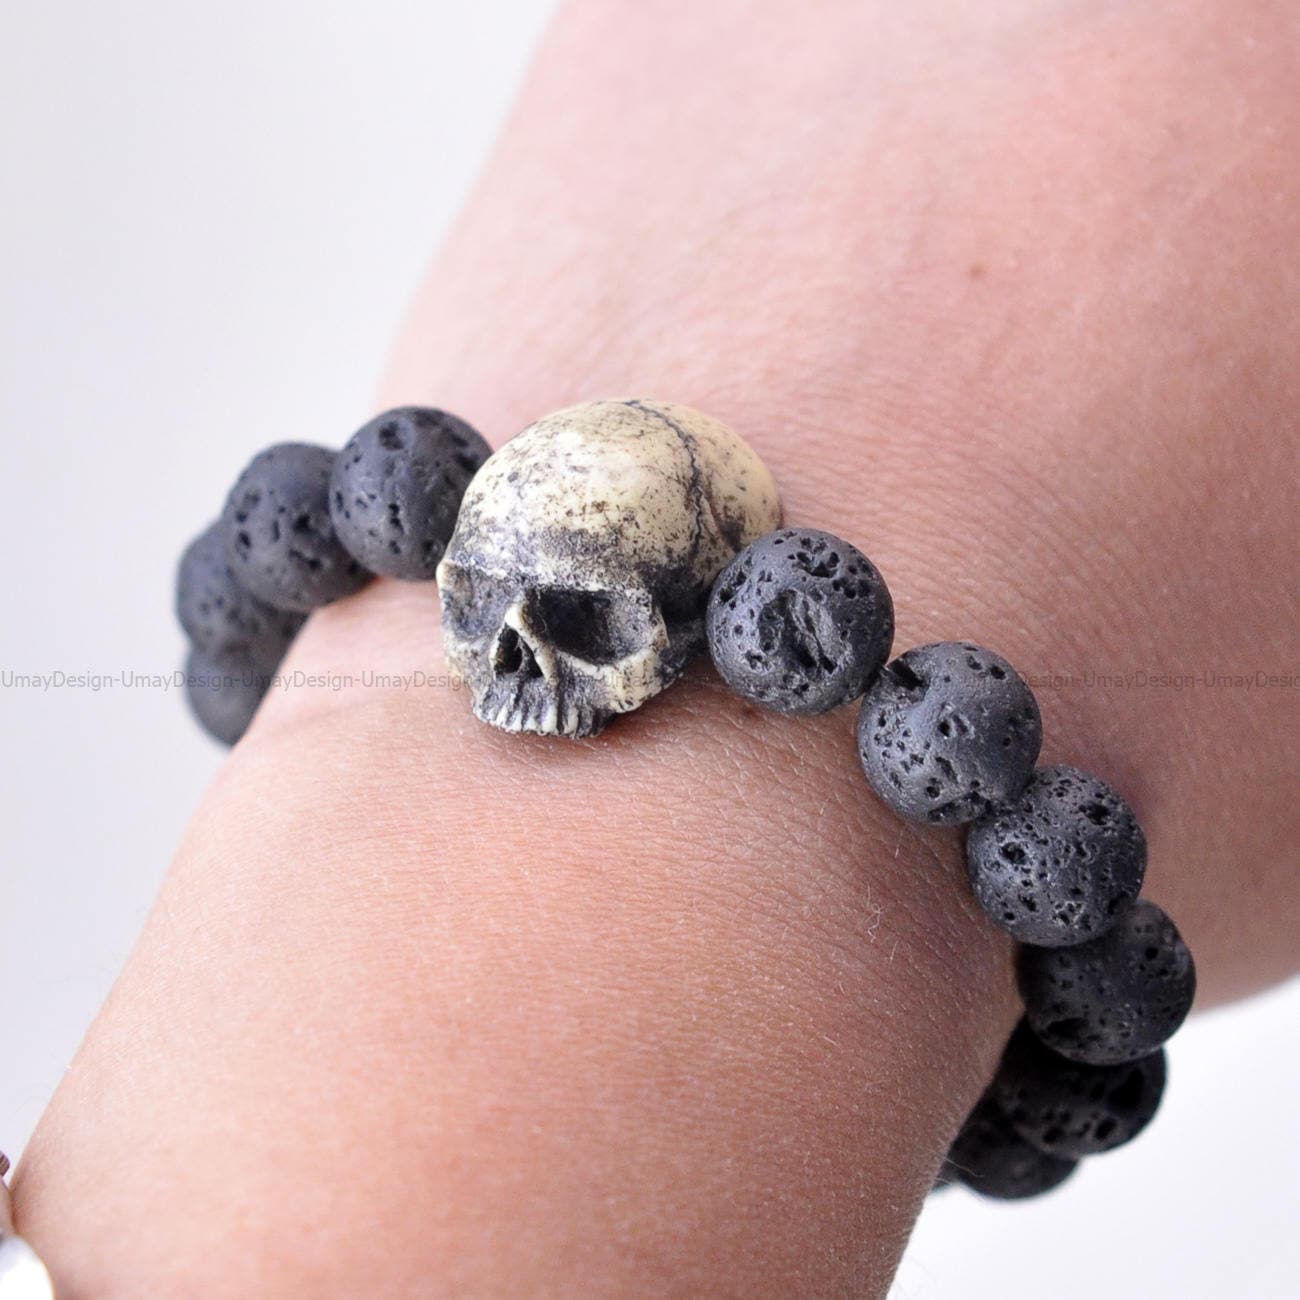 Red & Black Goth Skull Charm Bracelet